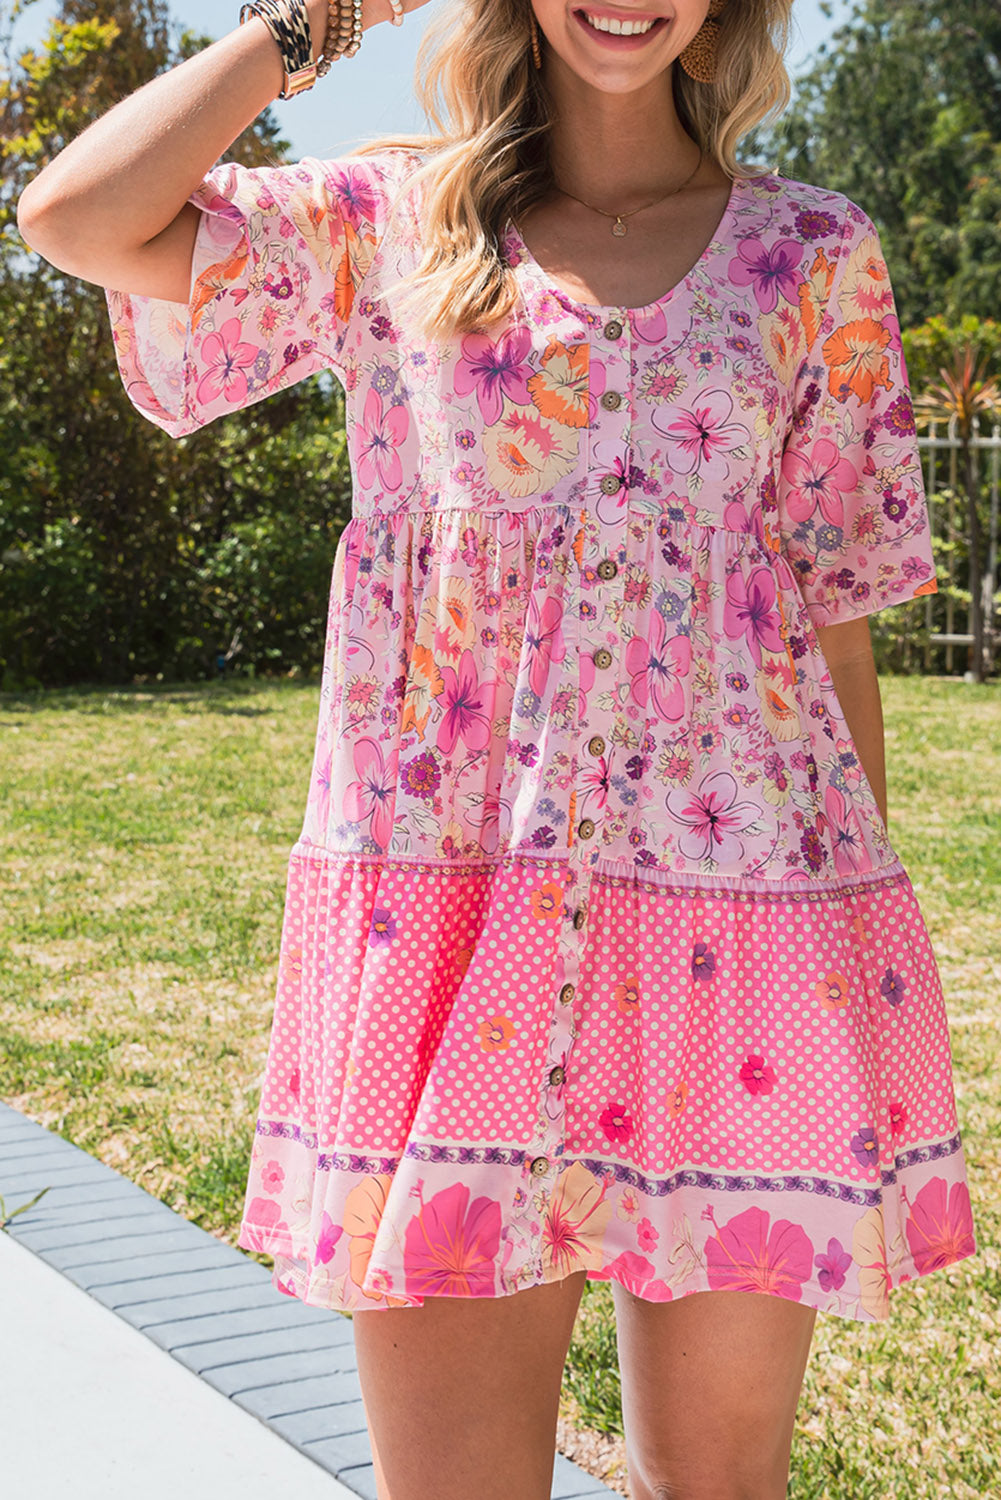 Summer Beach Wedding Guest Dress - Women's Floral Polka Dot Mini Dress with Buttons